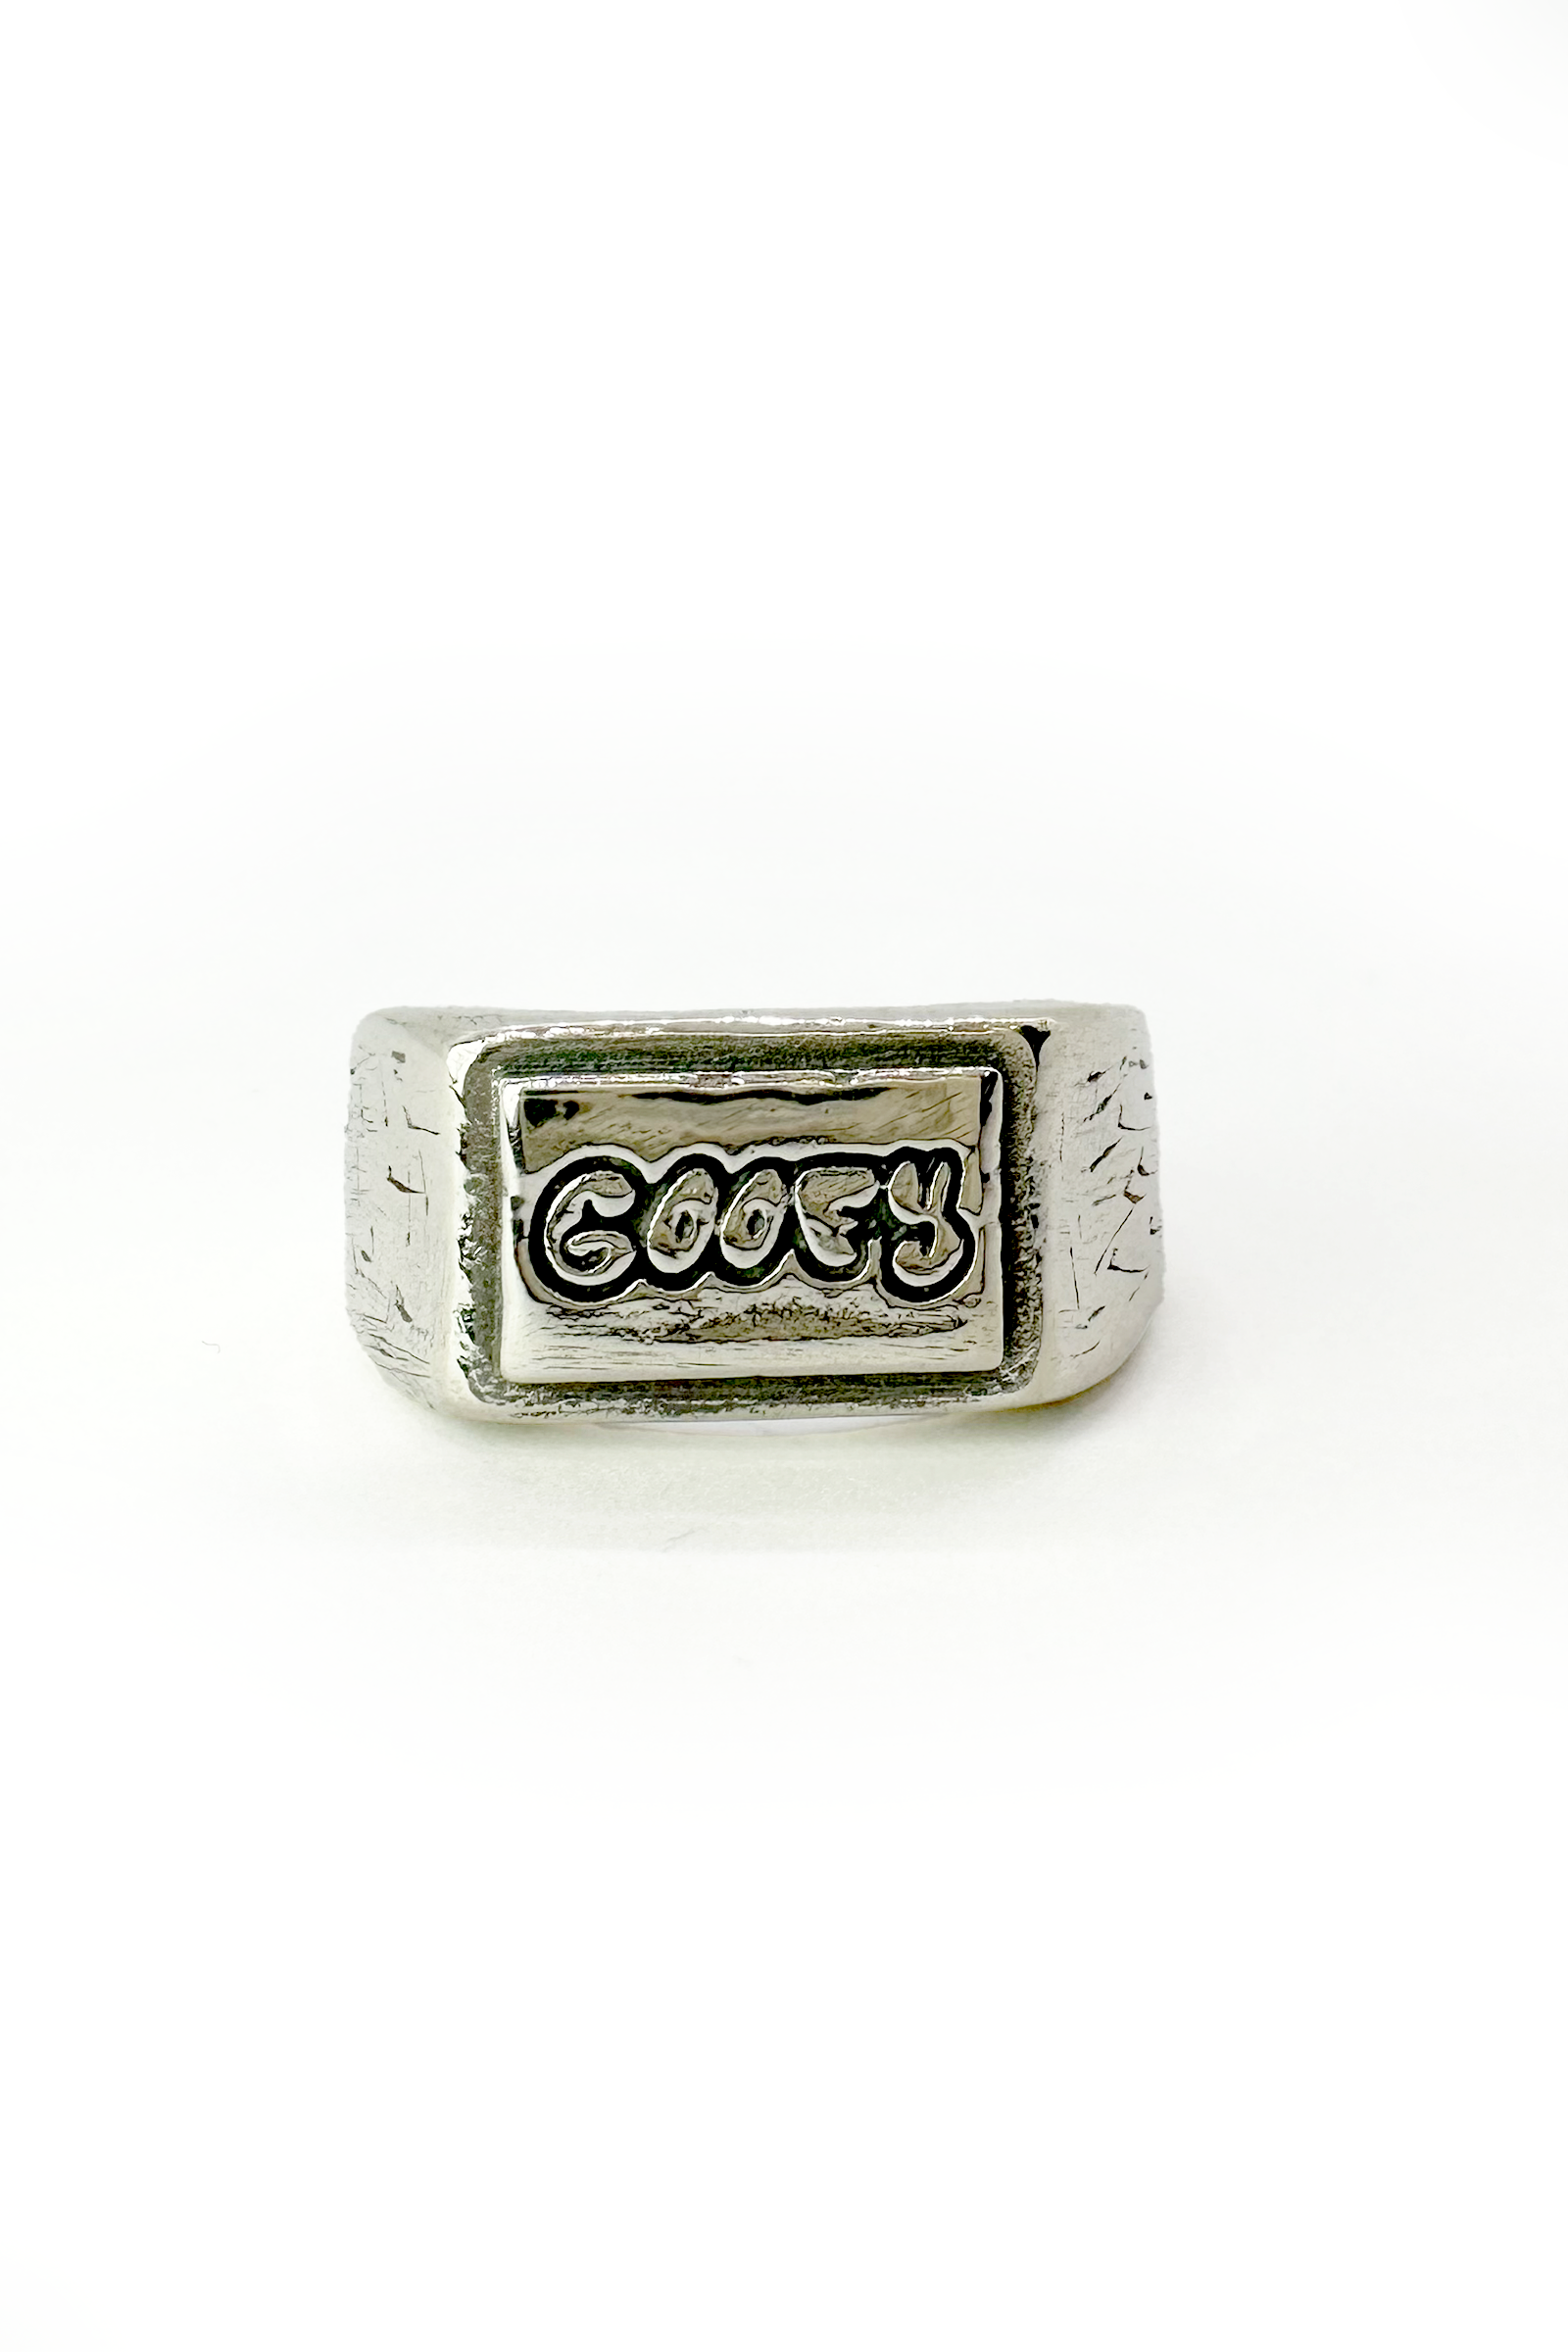 goofy es un anillo que indica el stance en el que haces skate.